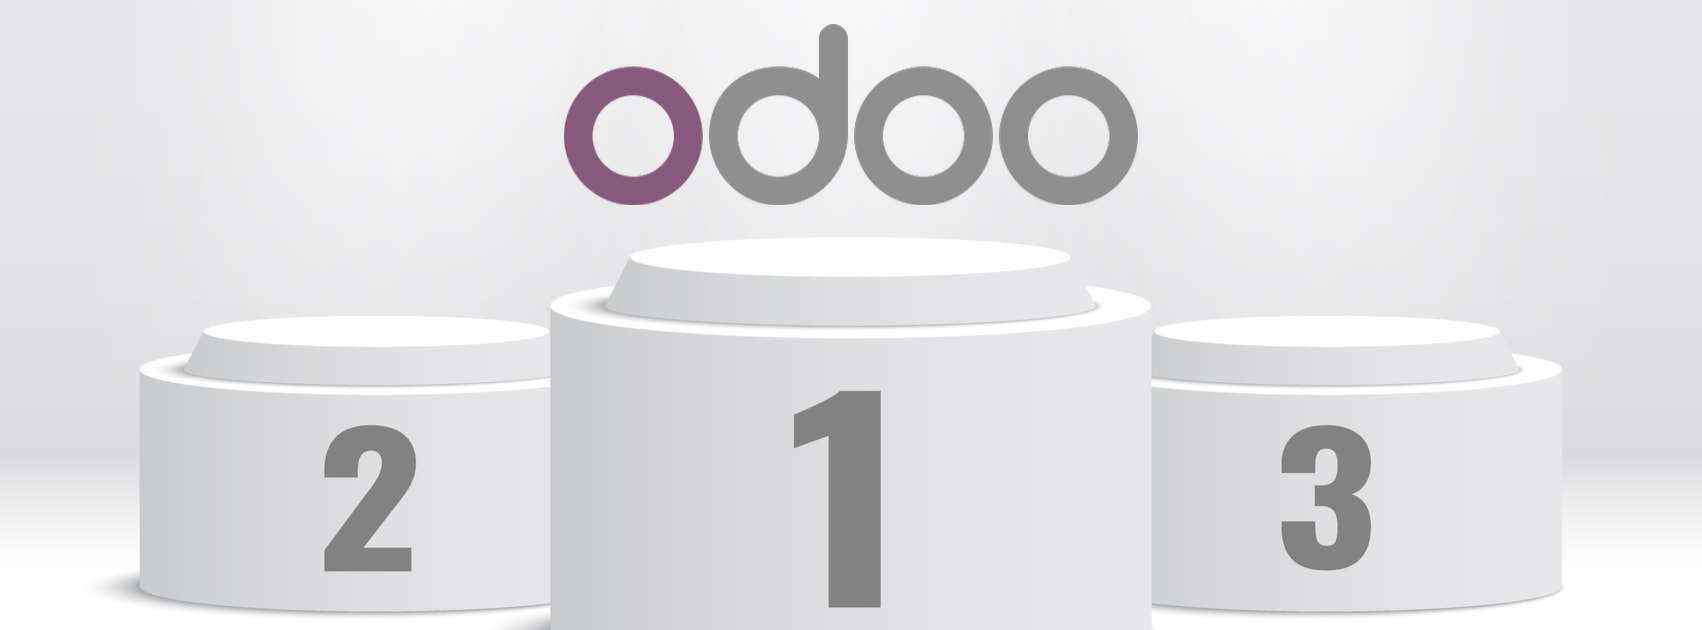 Odoo- Echantillon n° 2 pour trois colonnes